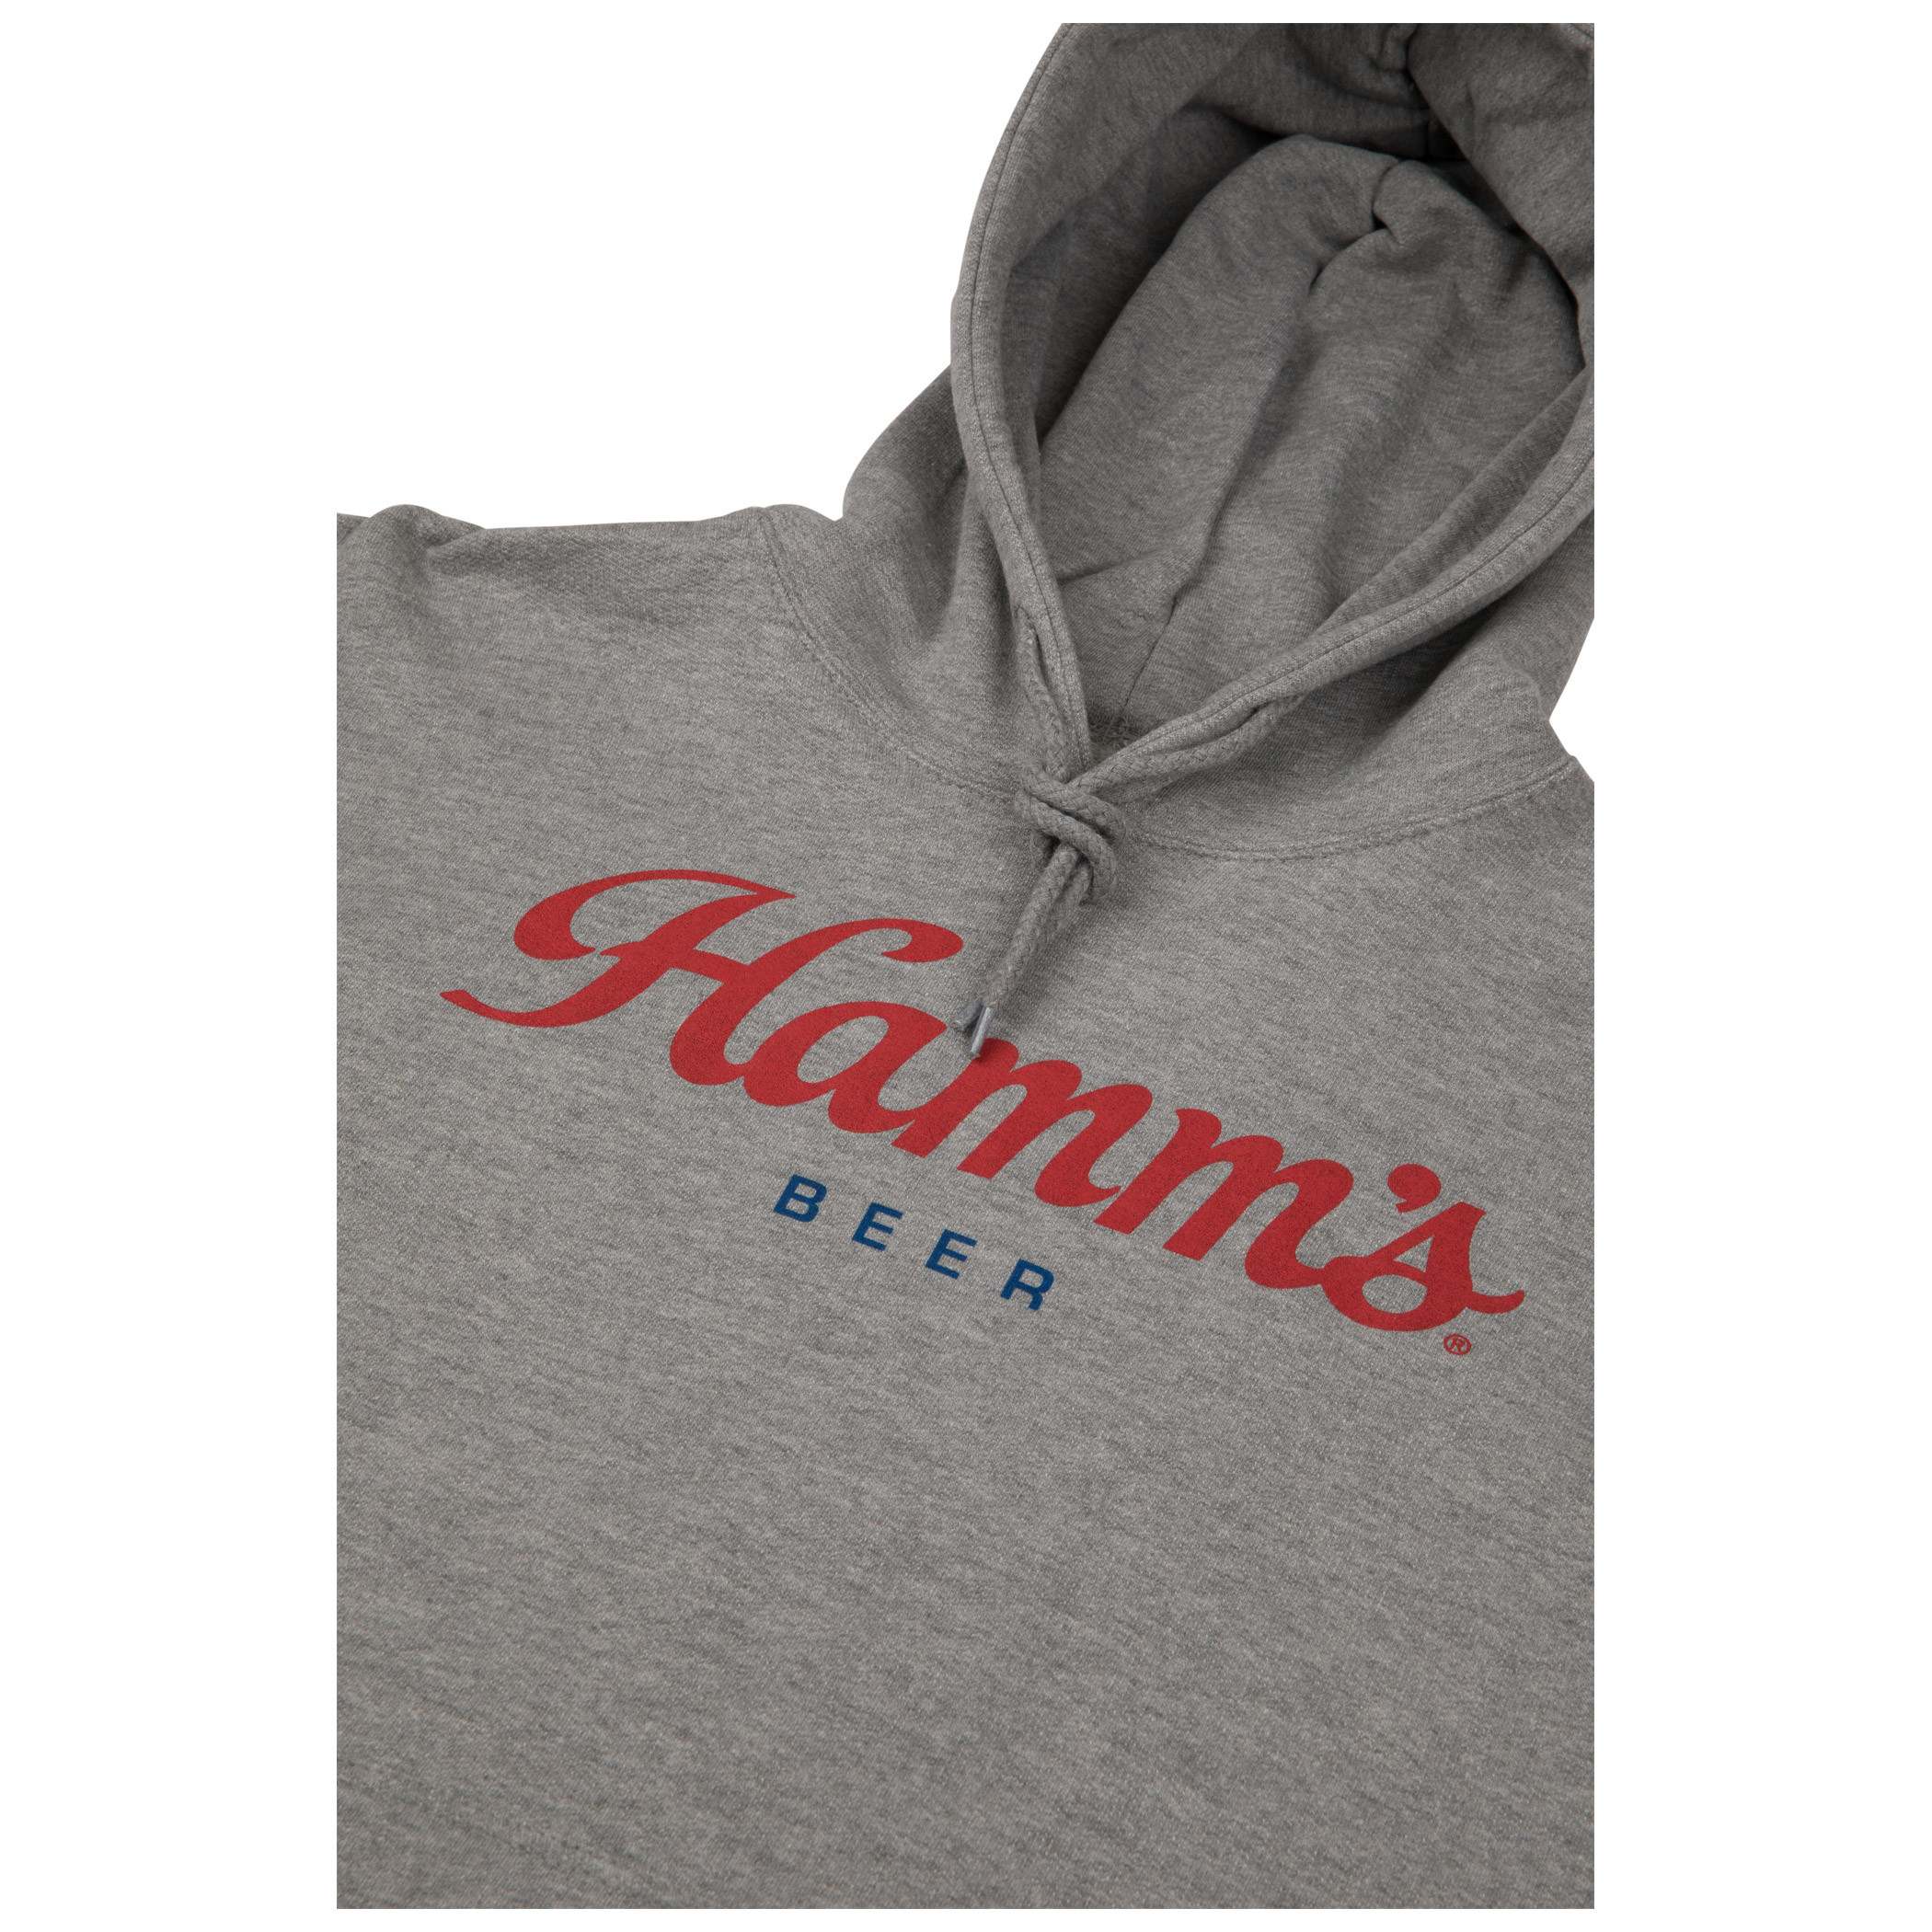 Hamm's Beer Logo Grey Colorway Pullover Hoodie